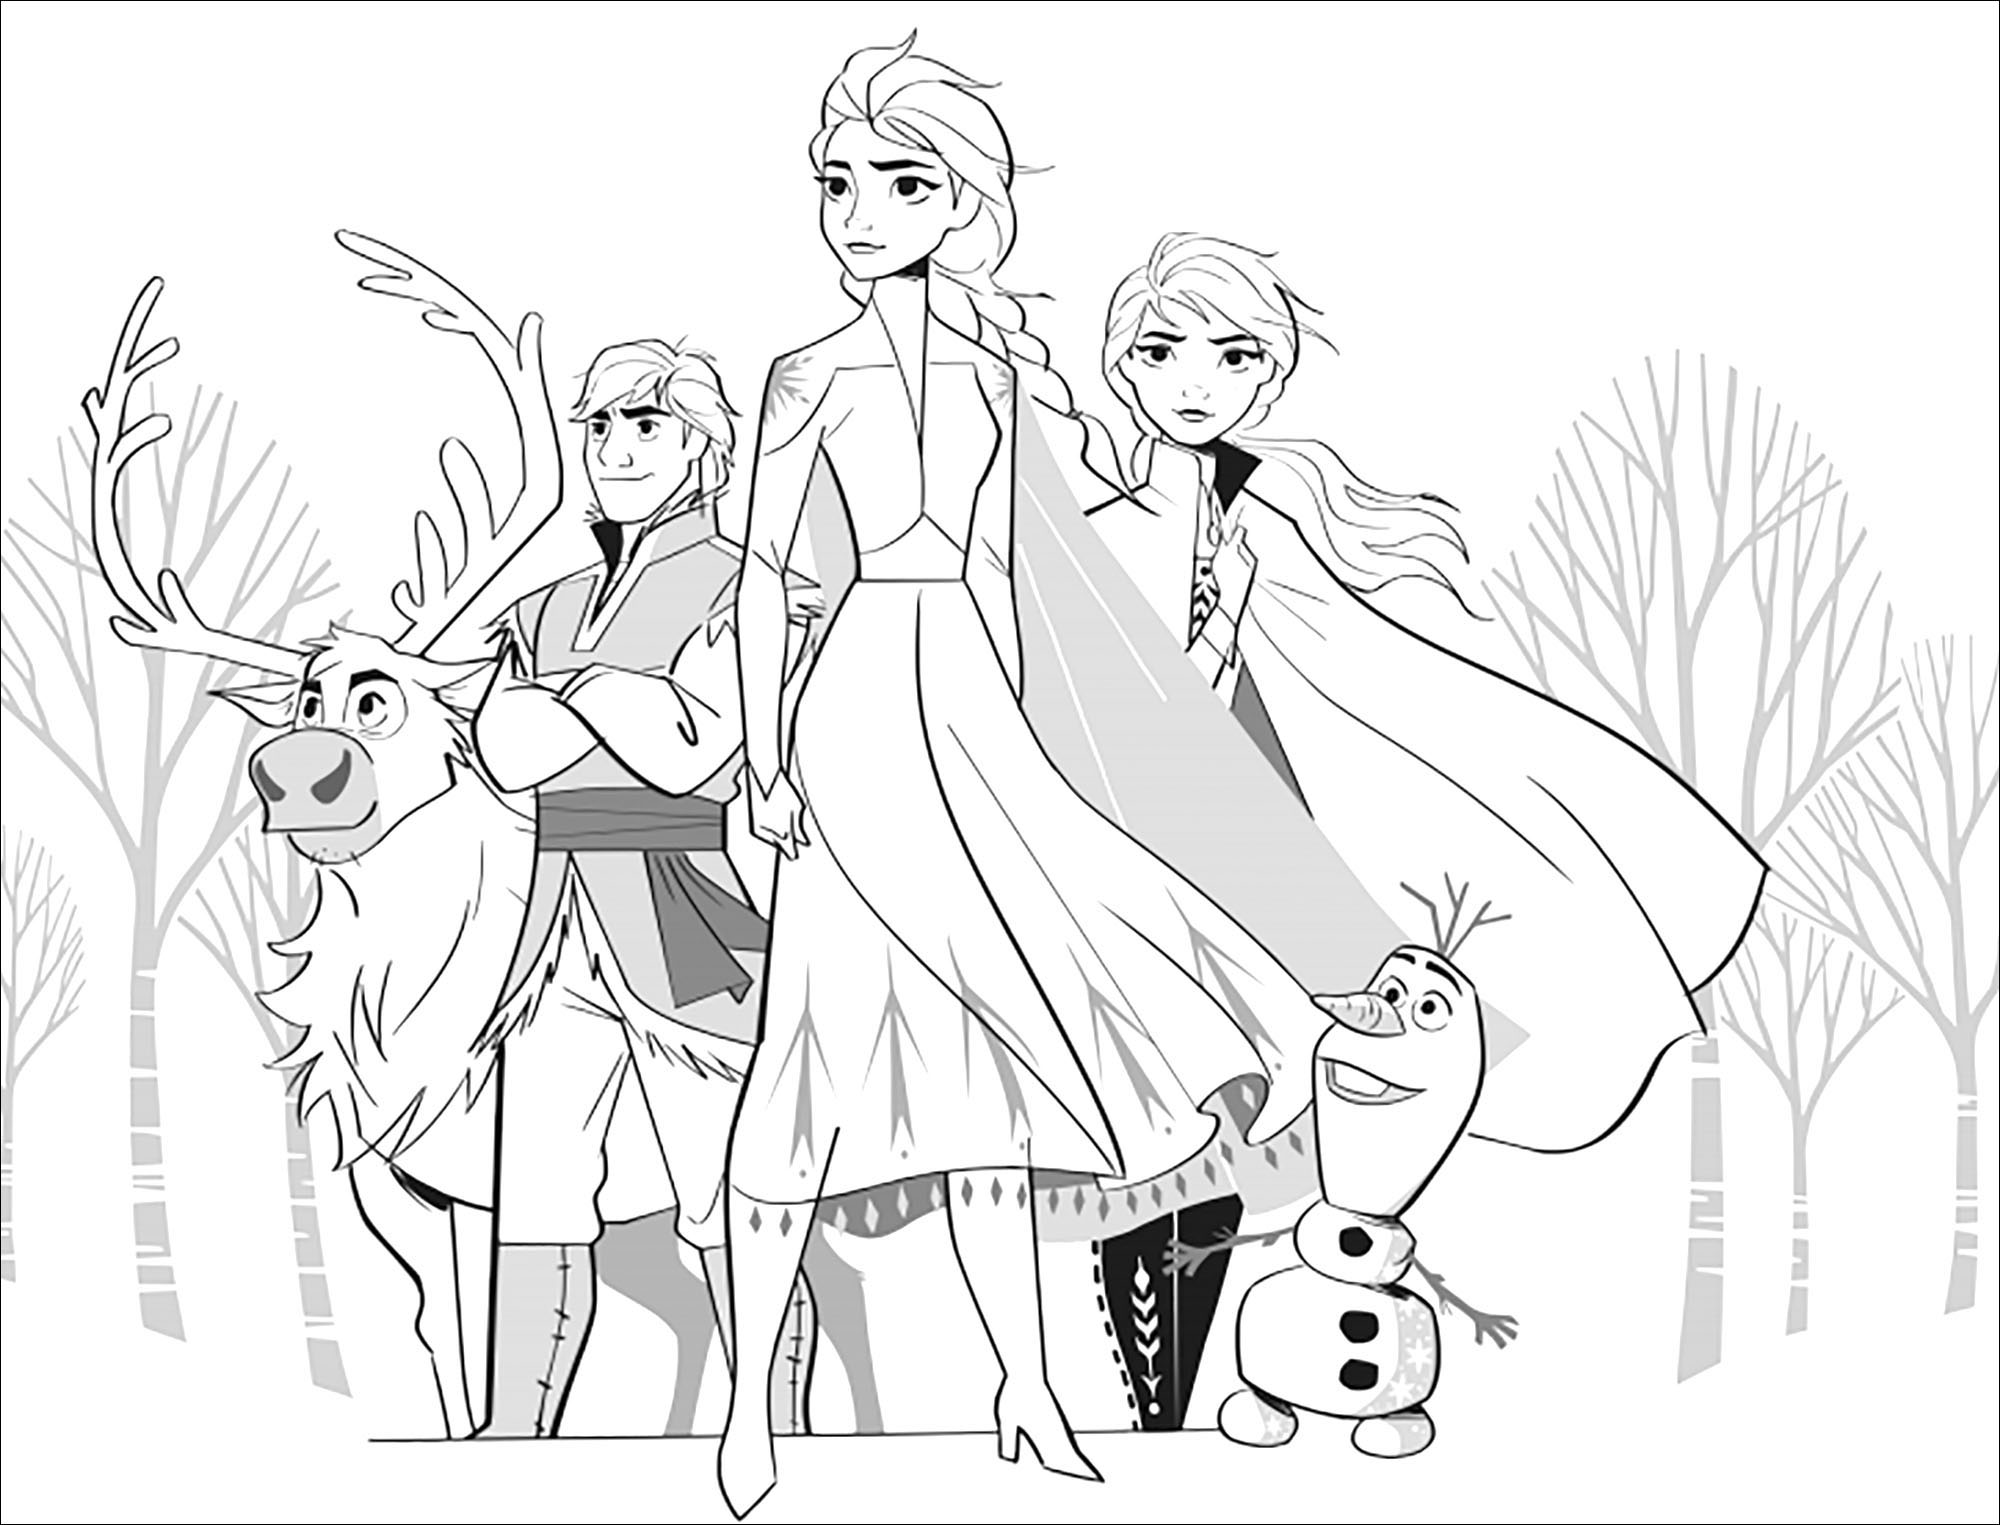 Retrouvez tous les héros de La reine des neiges 2 (Disney) : Elsa, Anna, Olaf, Sven, Kristoff (version sans texte)